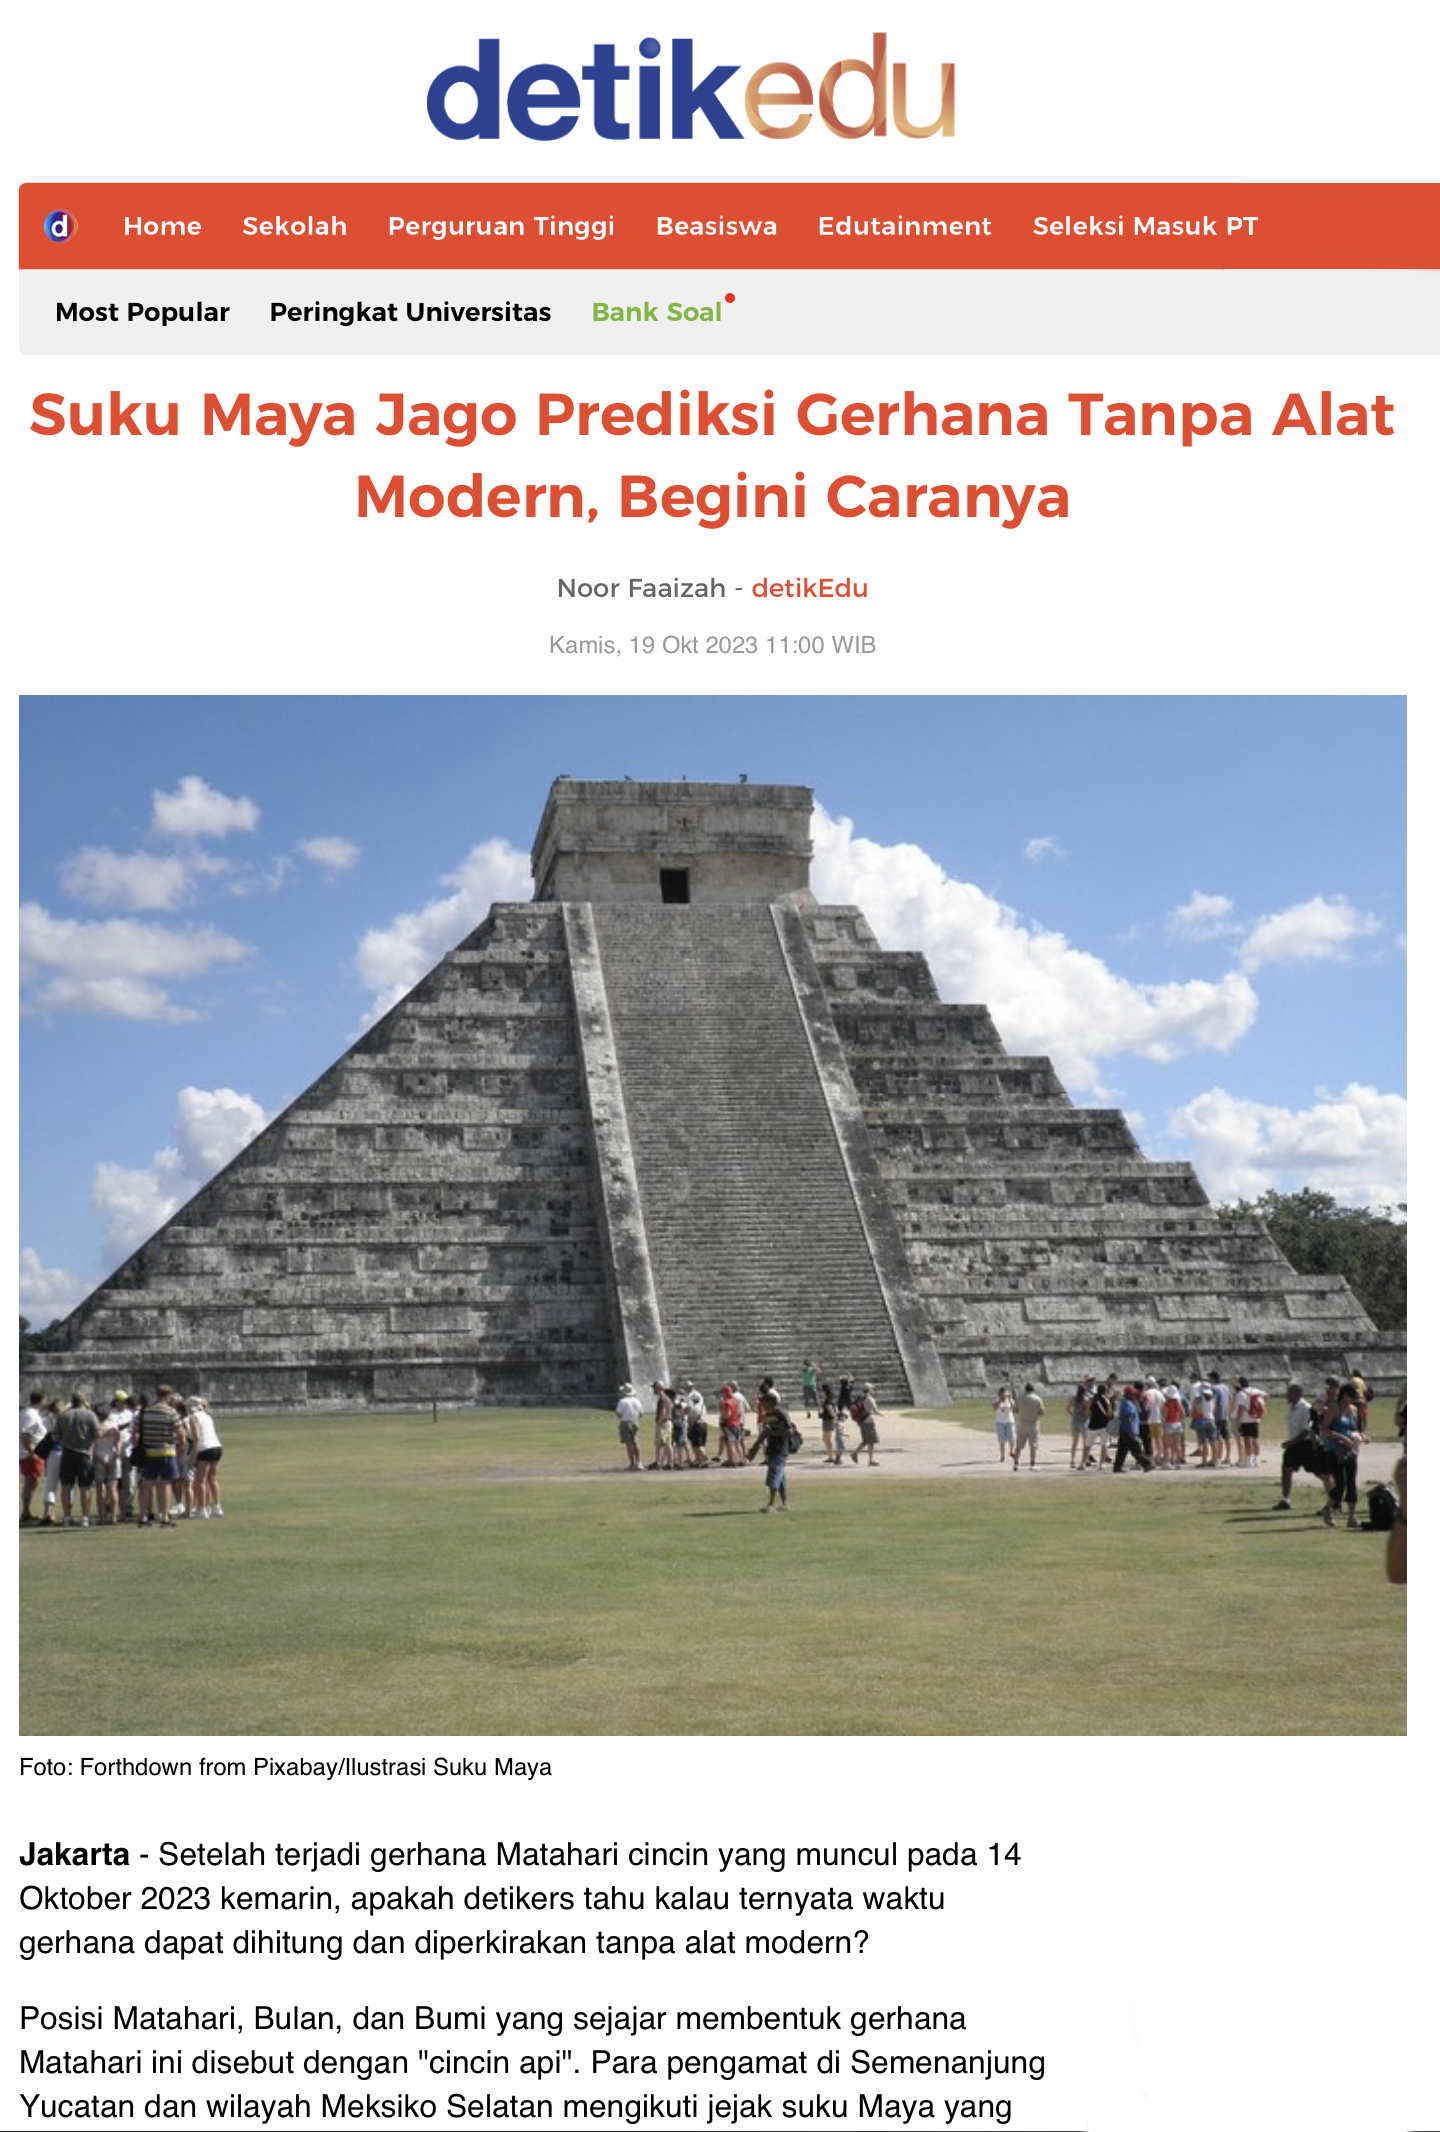 Suku Maya Jago Prediksi Gerhana Tanpa Alat Modern, Begini Caranya